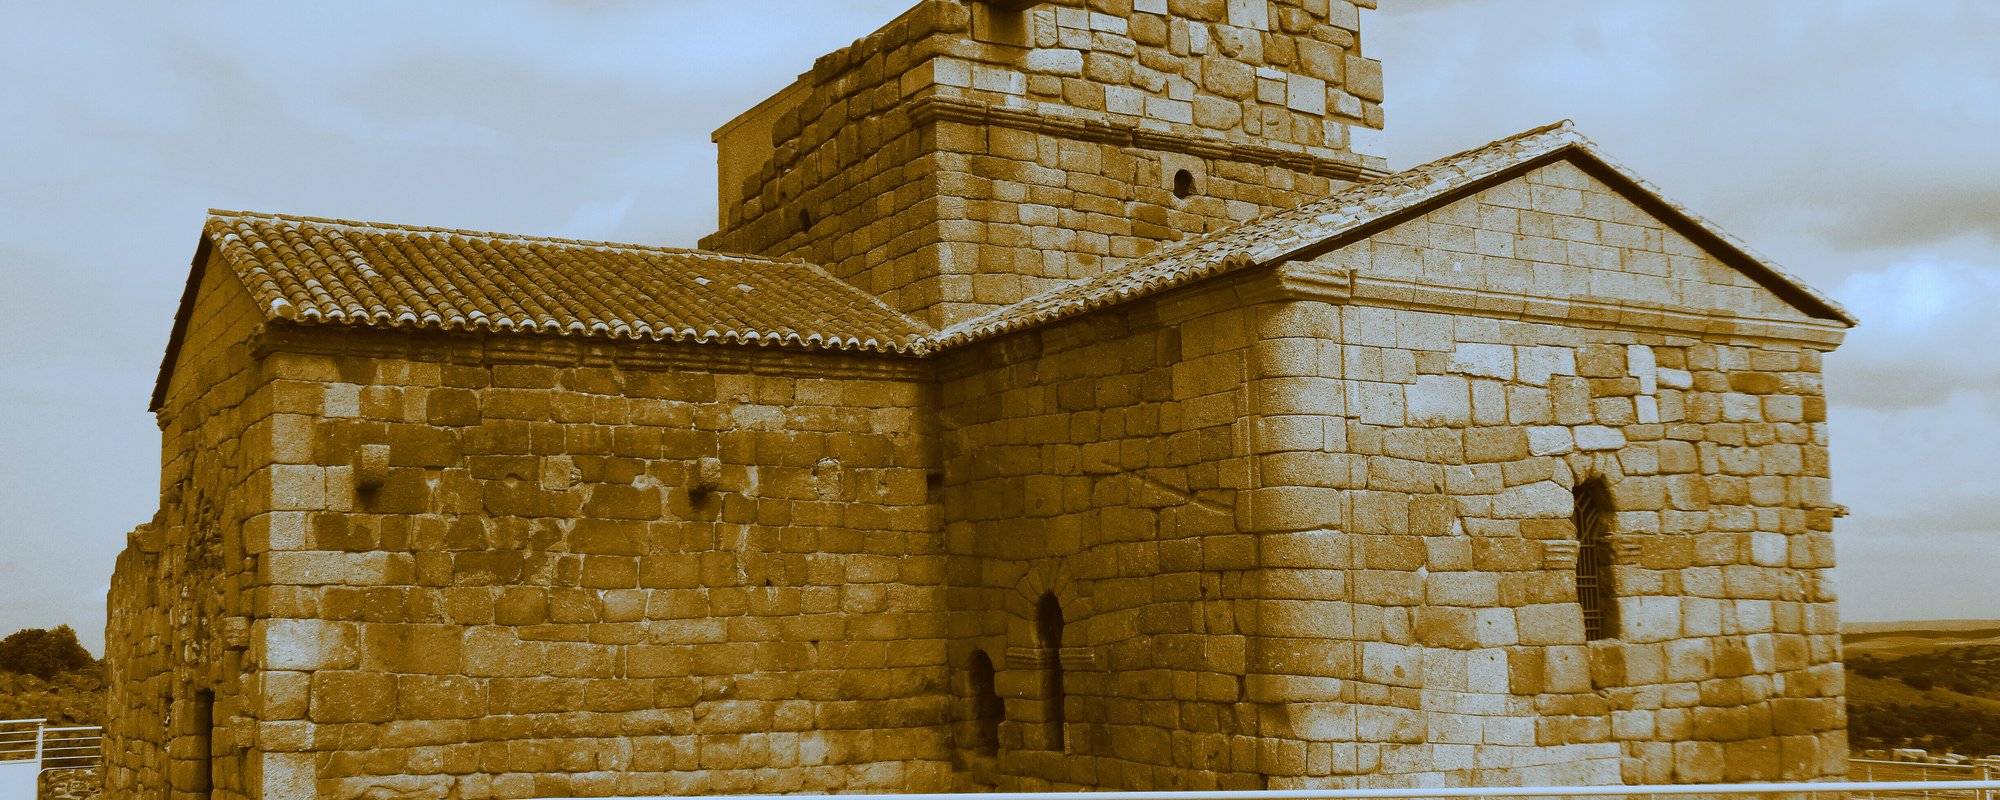 The mysterious Visigothic hermitage of Santa María de Melque